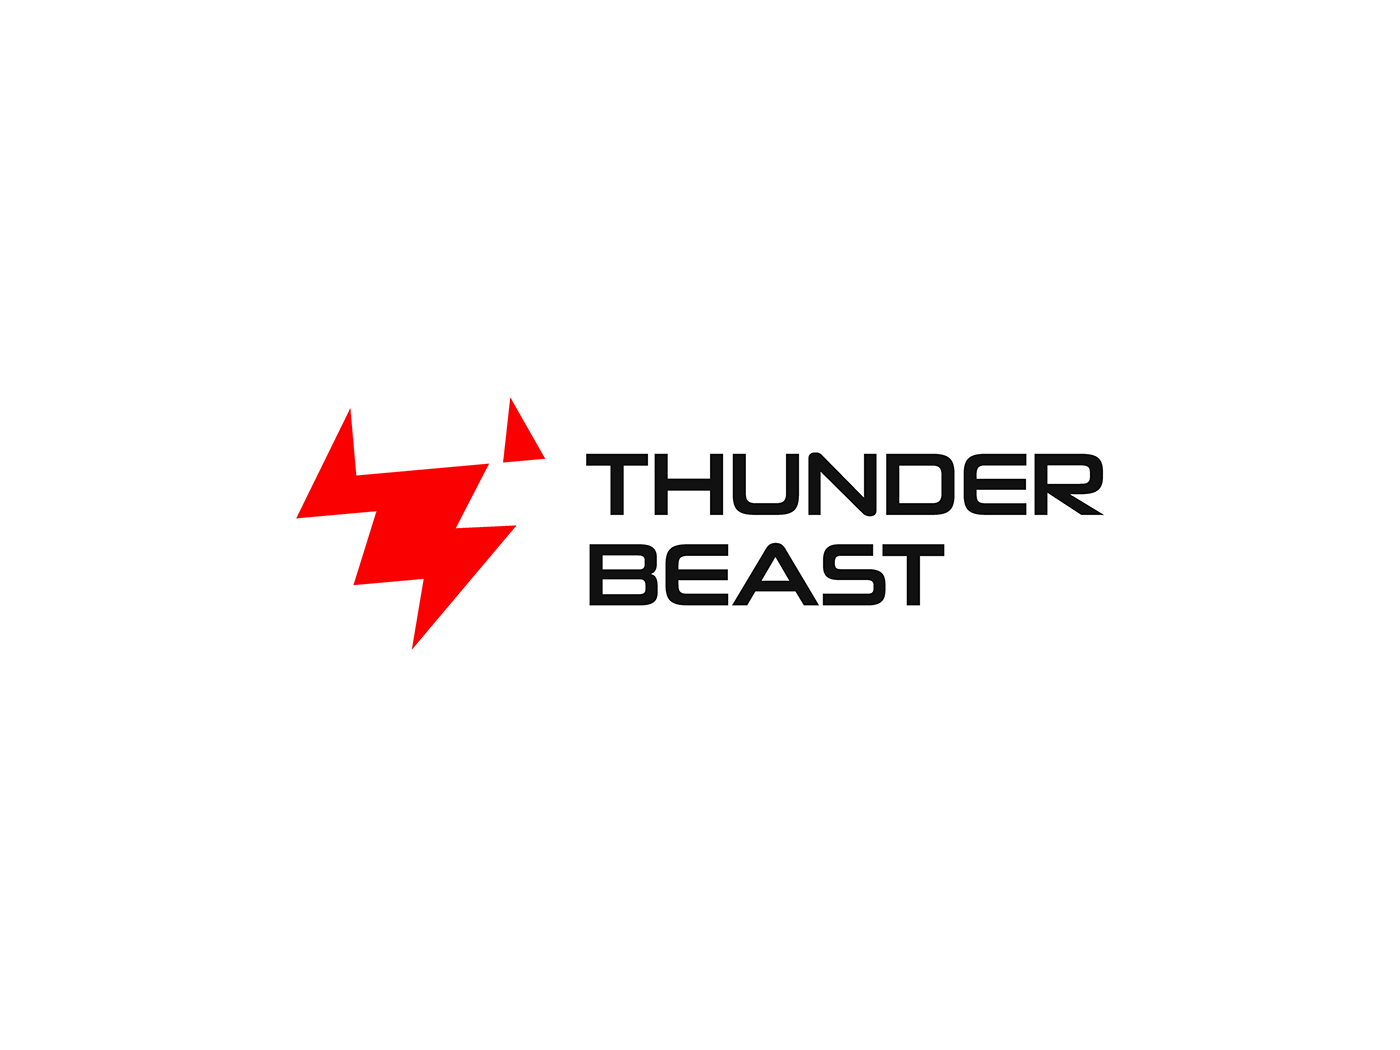 thunder beast bolt red animal logo design brand branding  brand identity